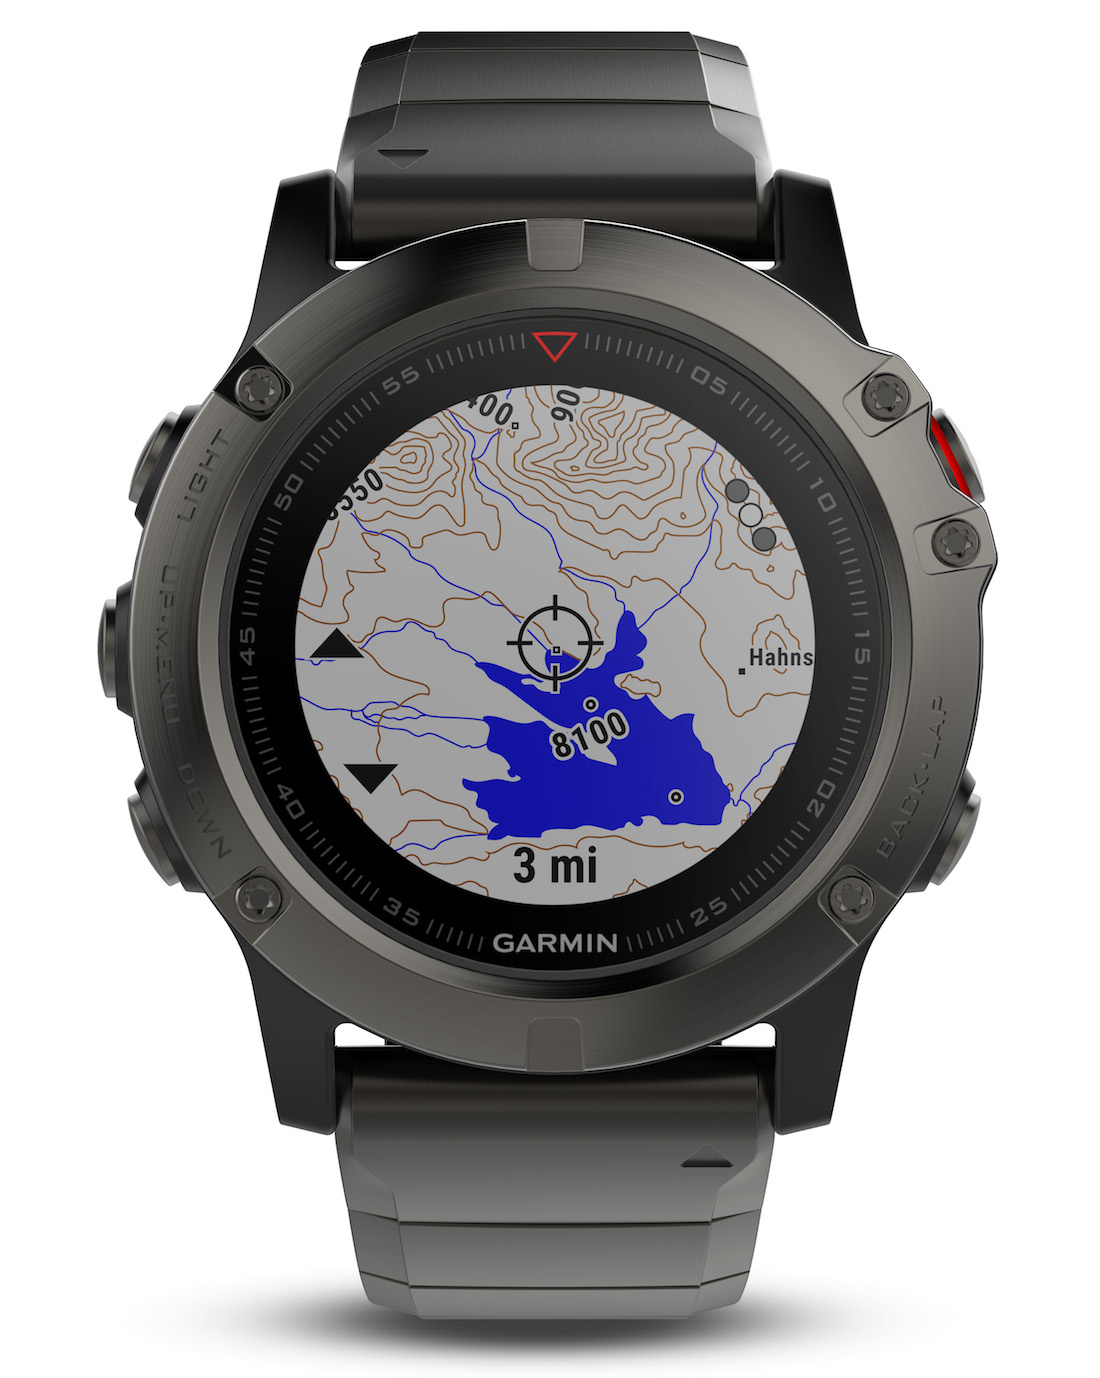 Garmin Fēnix 5 Watches Watch Releases 